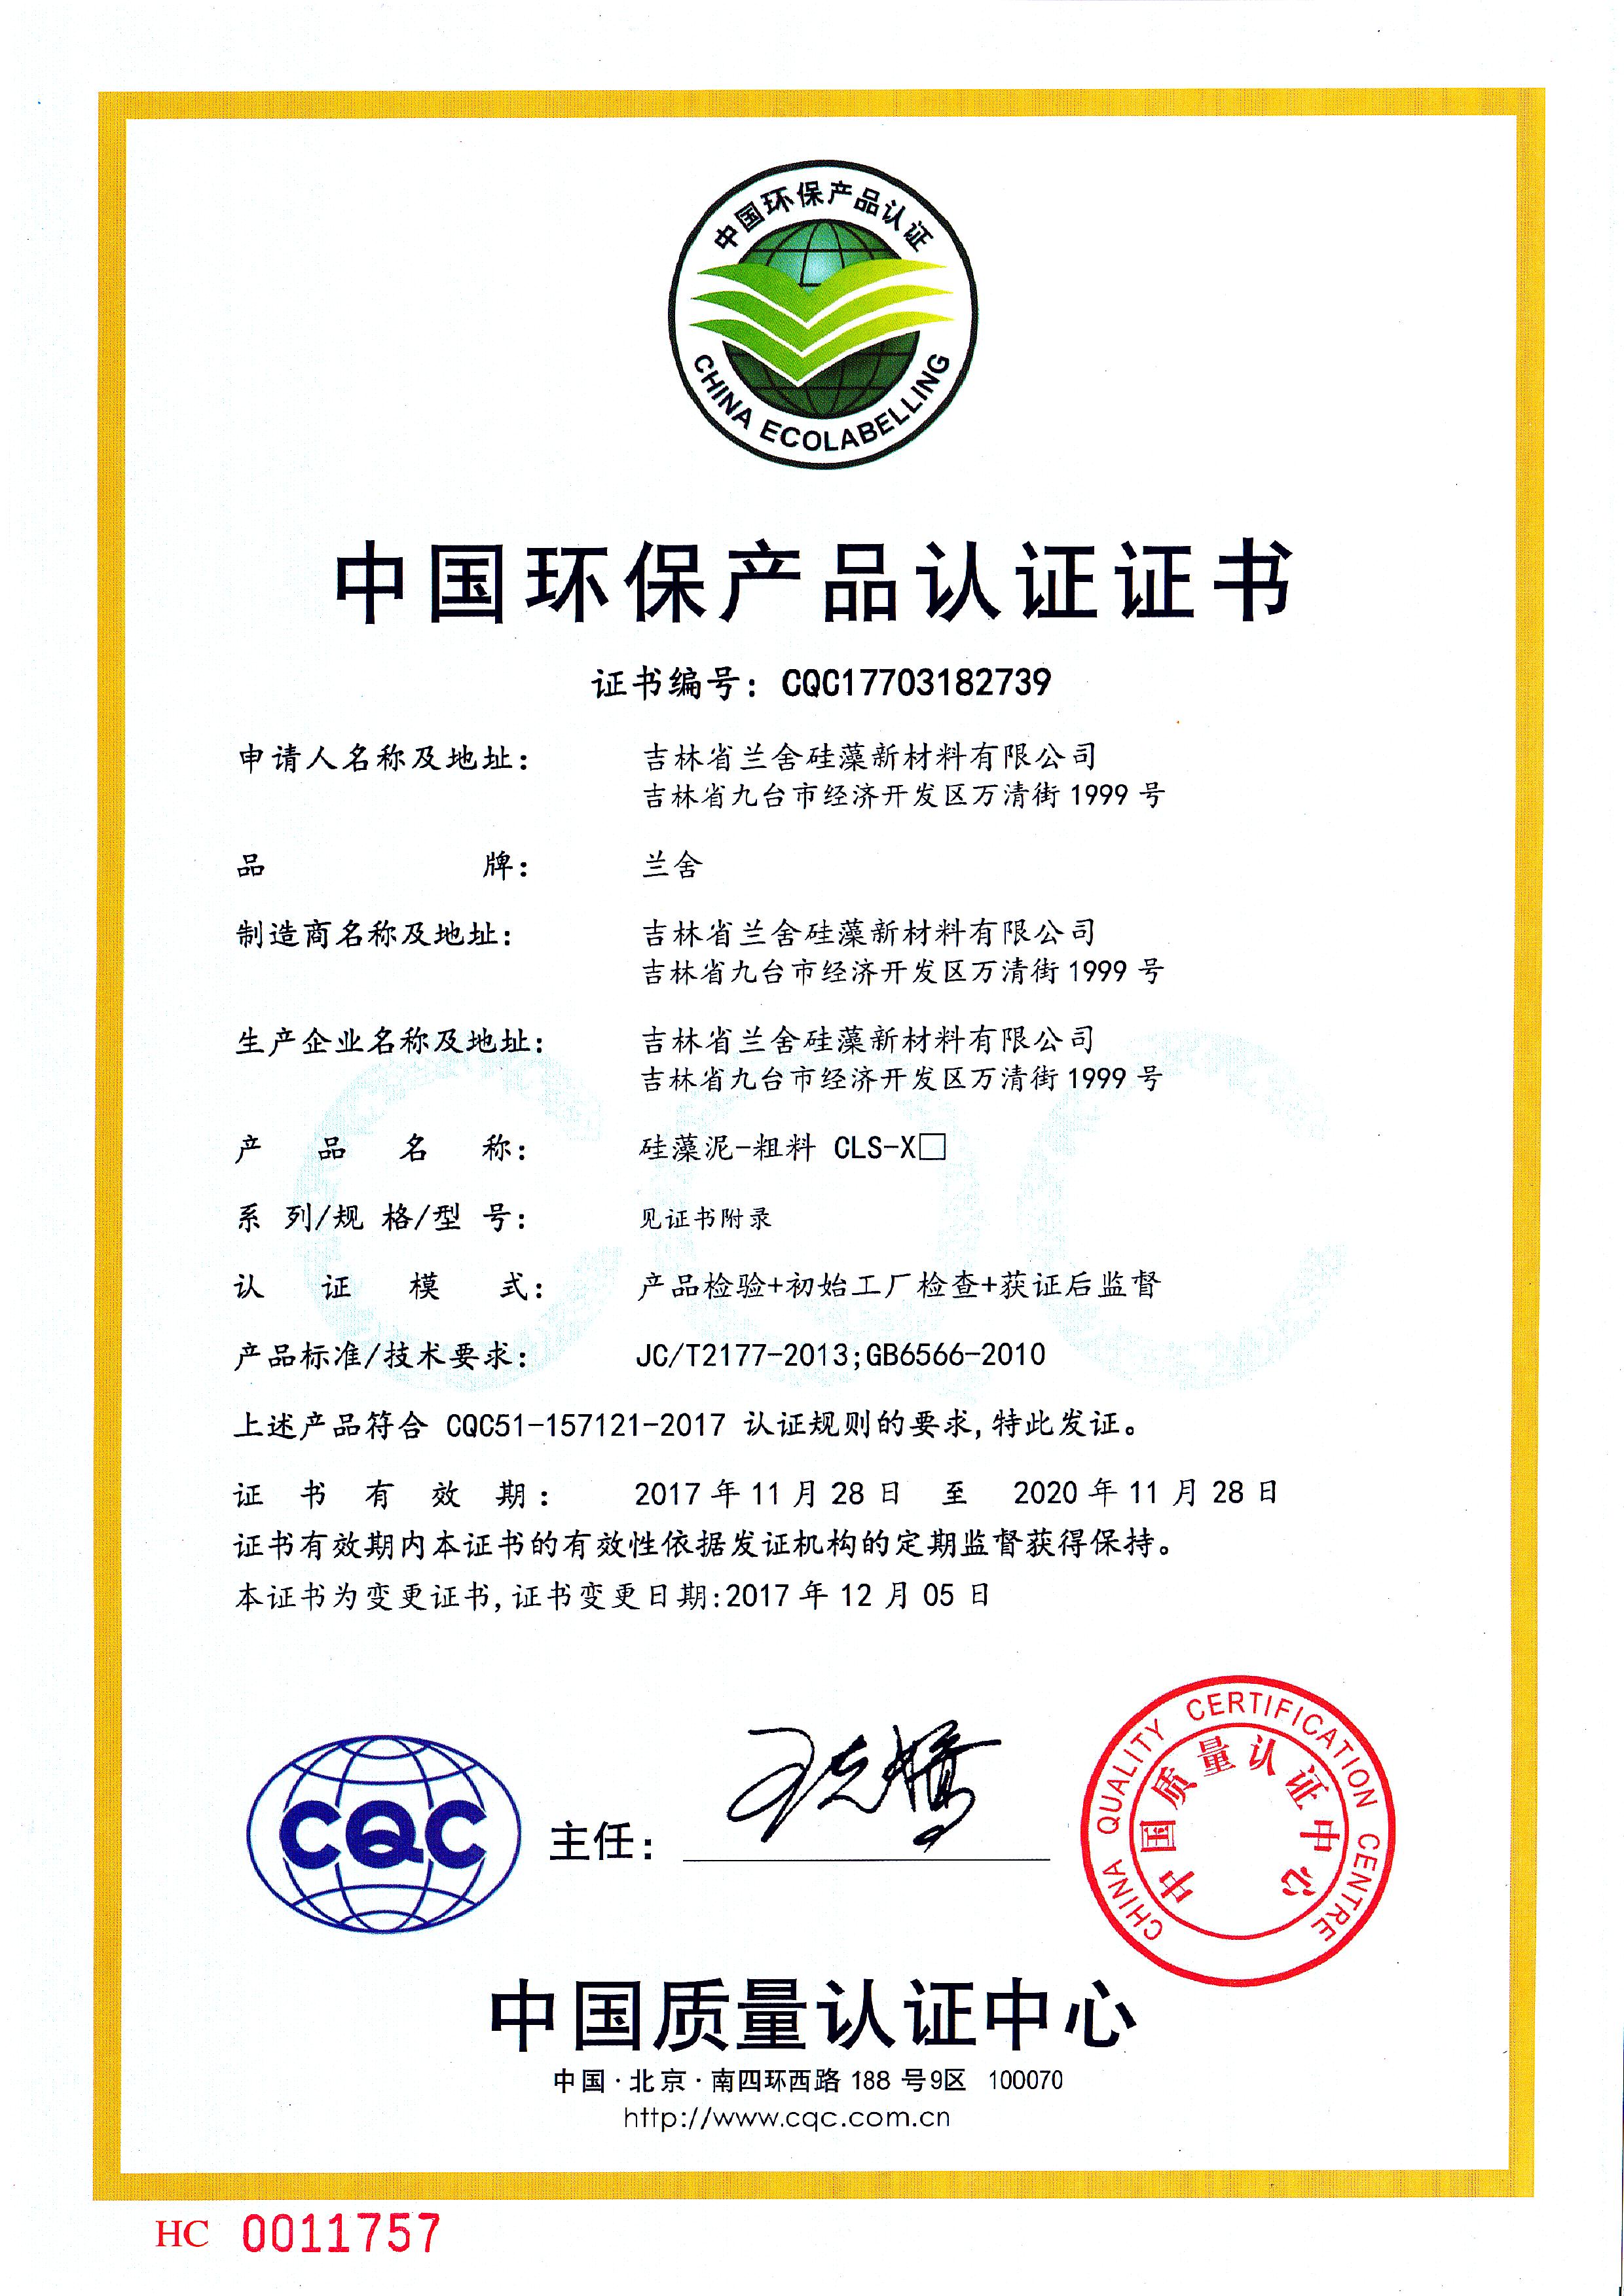 中国环保产品认证证书-粗料.jpg